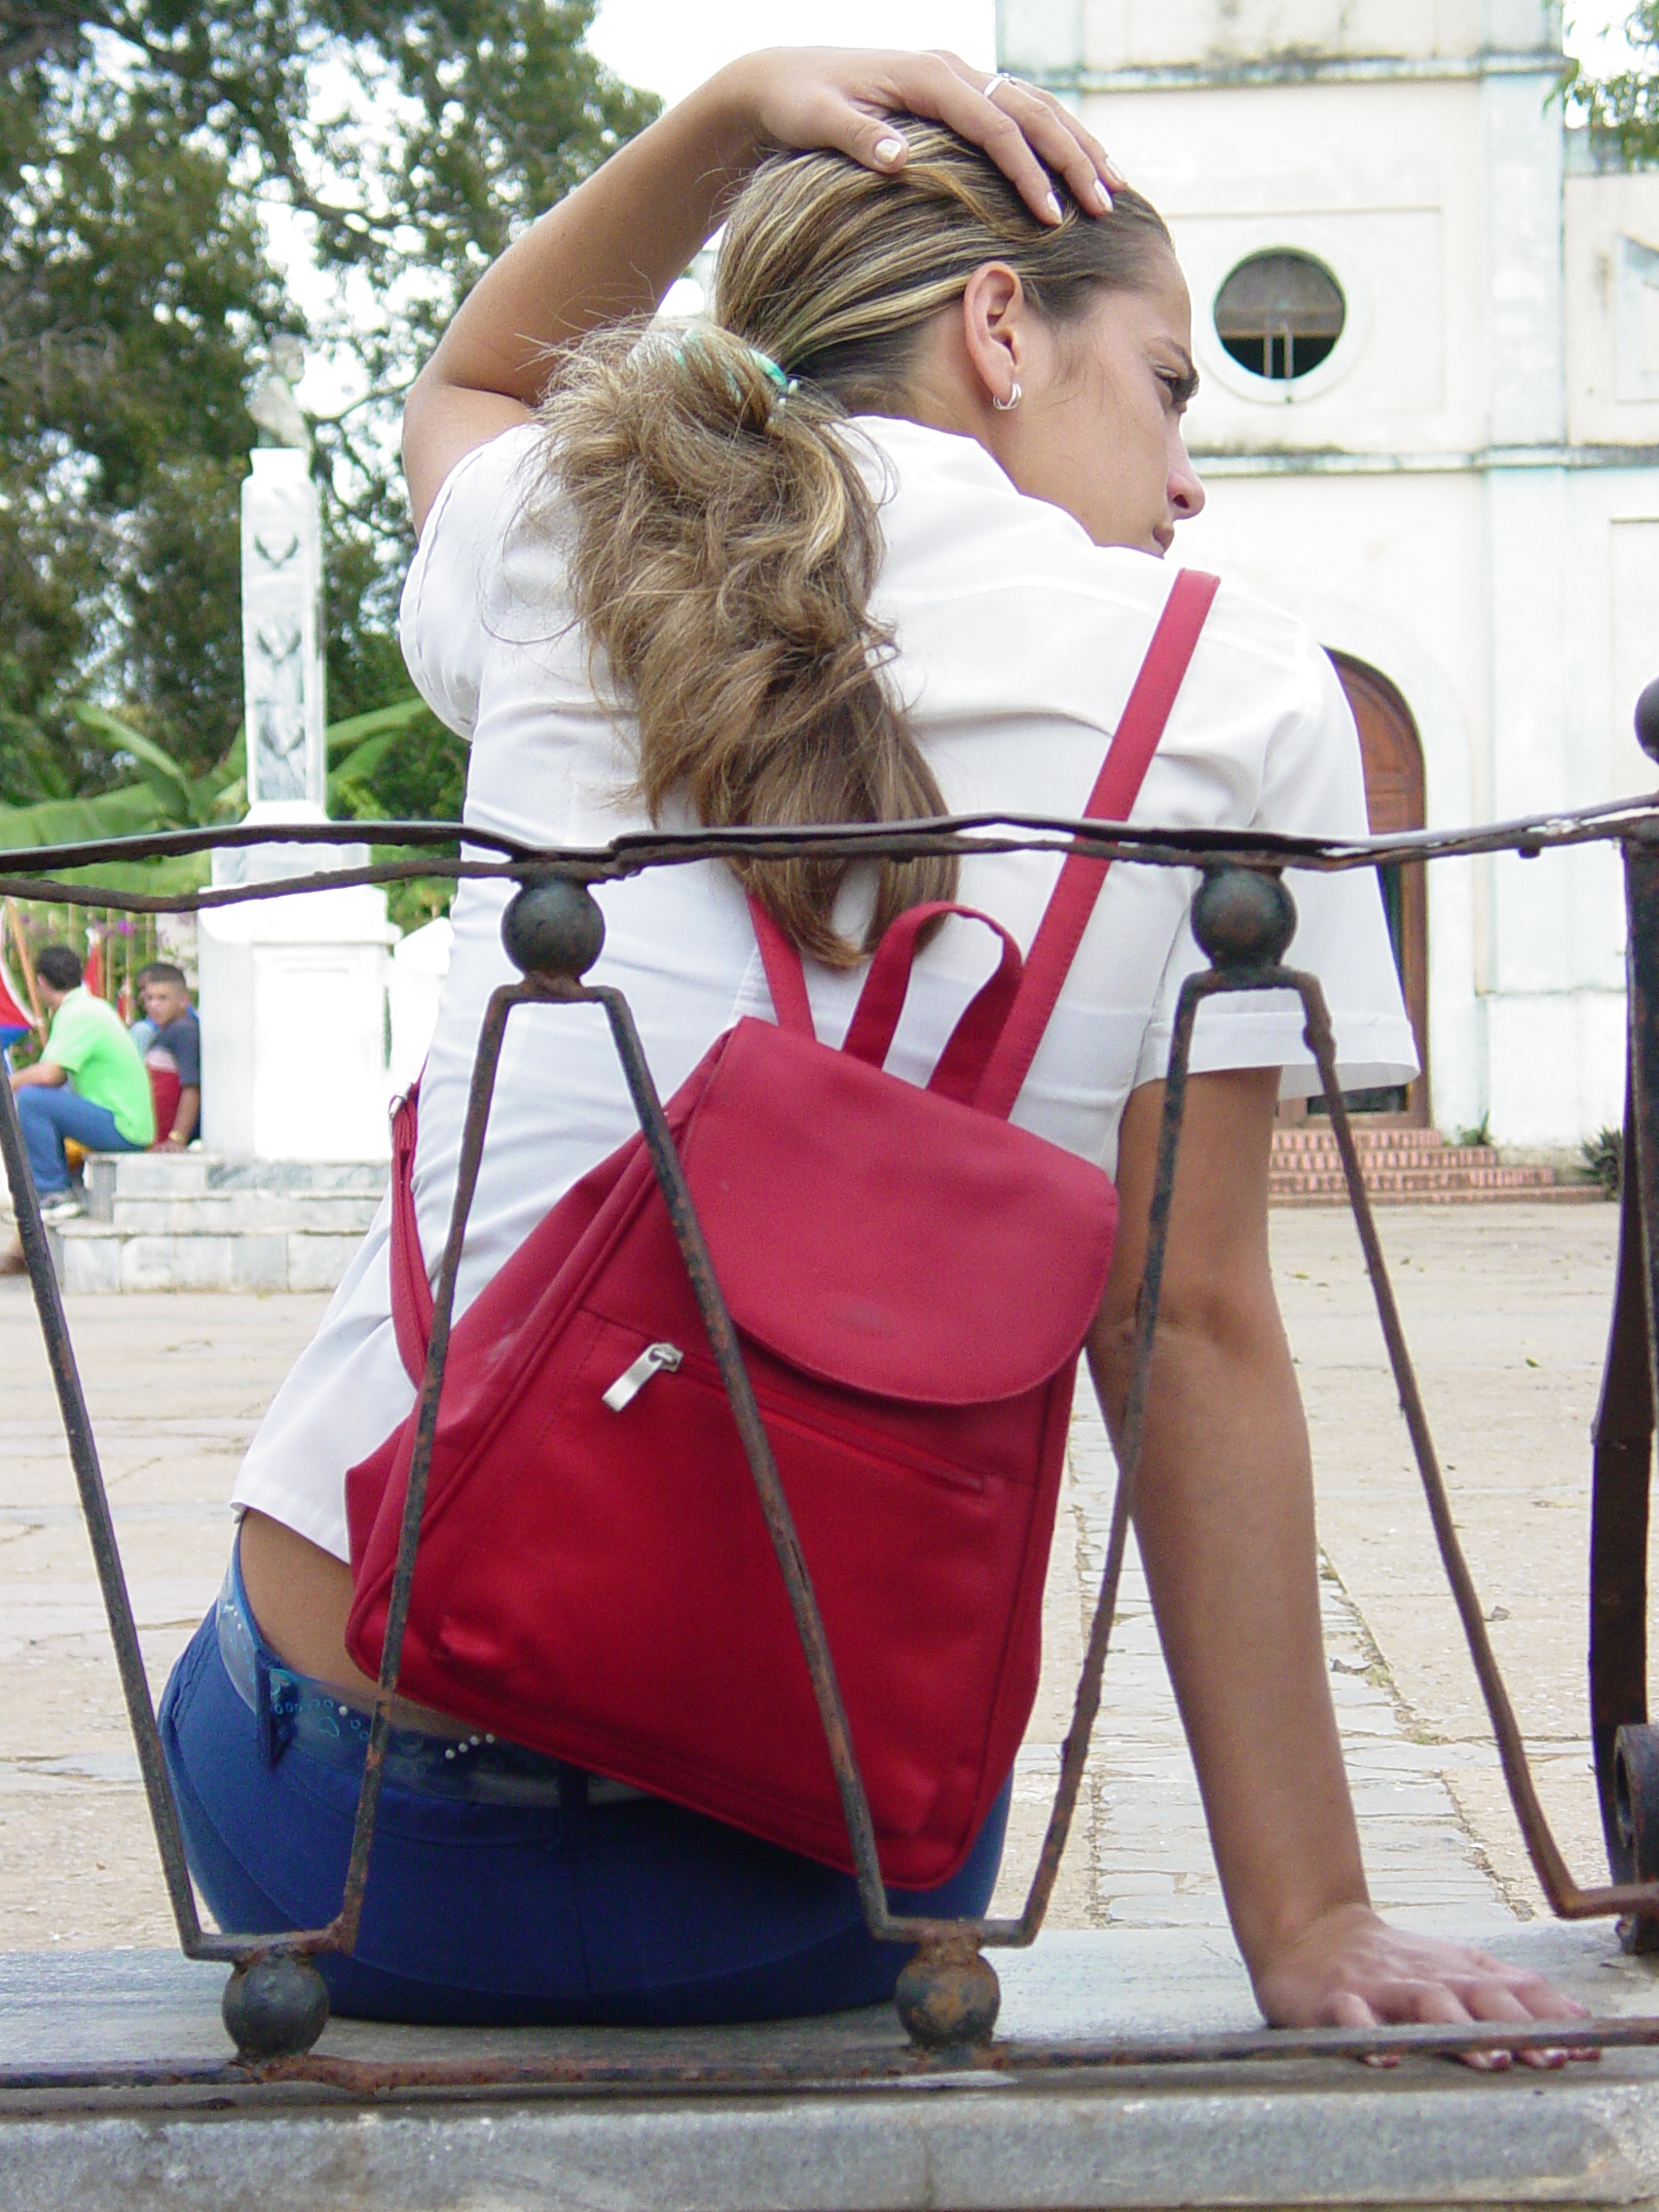 Young Woman in School Uniform - Vinales - Cuba